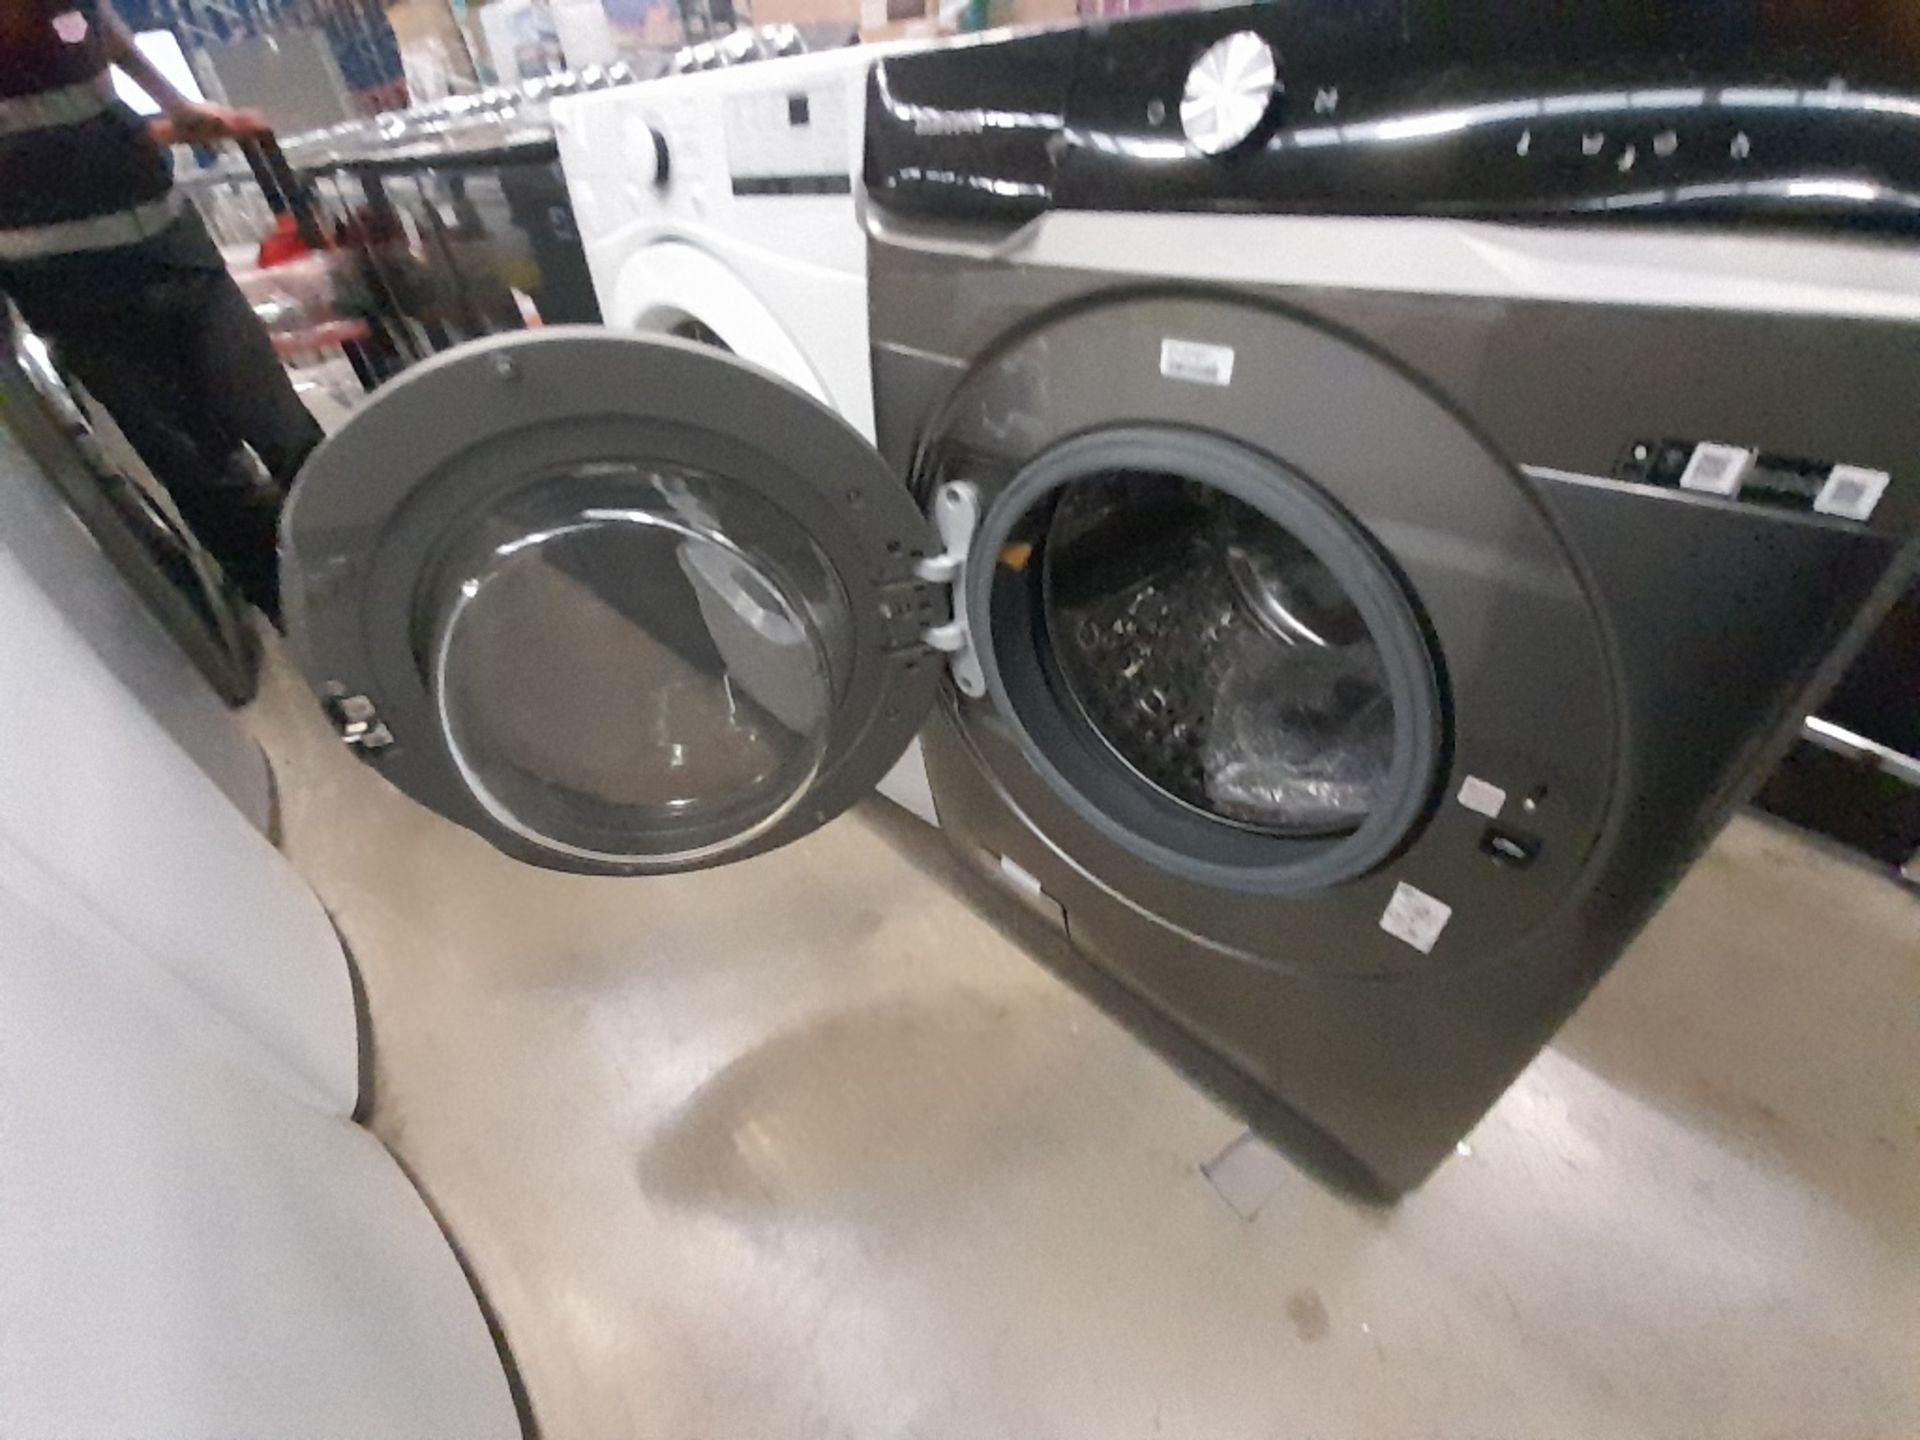 Lote de 1 lavadora y 1 Secadora contiene: 1 lavadora de 20 KG, Marca SAMSUNG, Modelo WD20T6300GP, S - Image 6 of 7